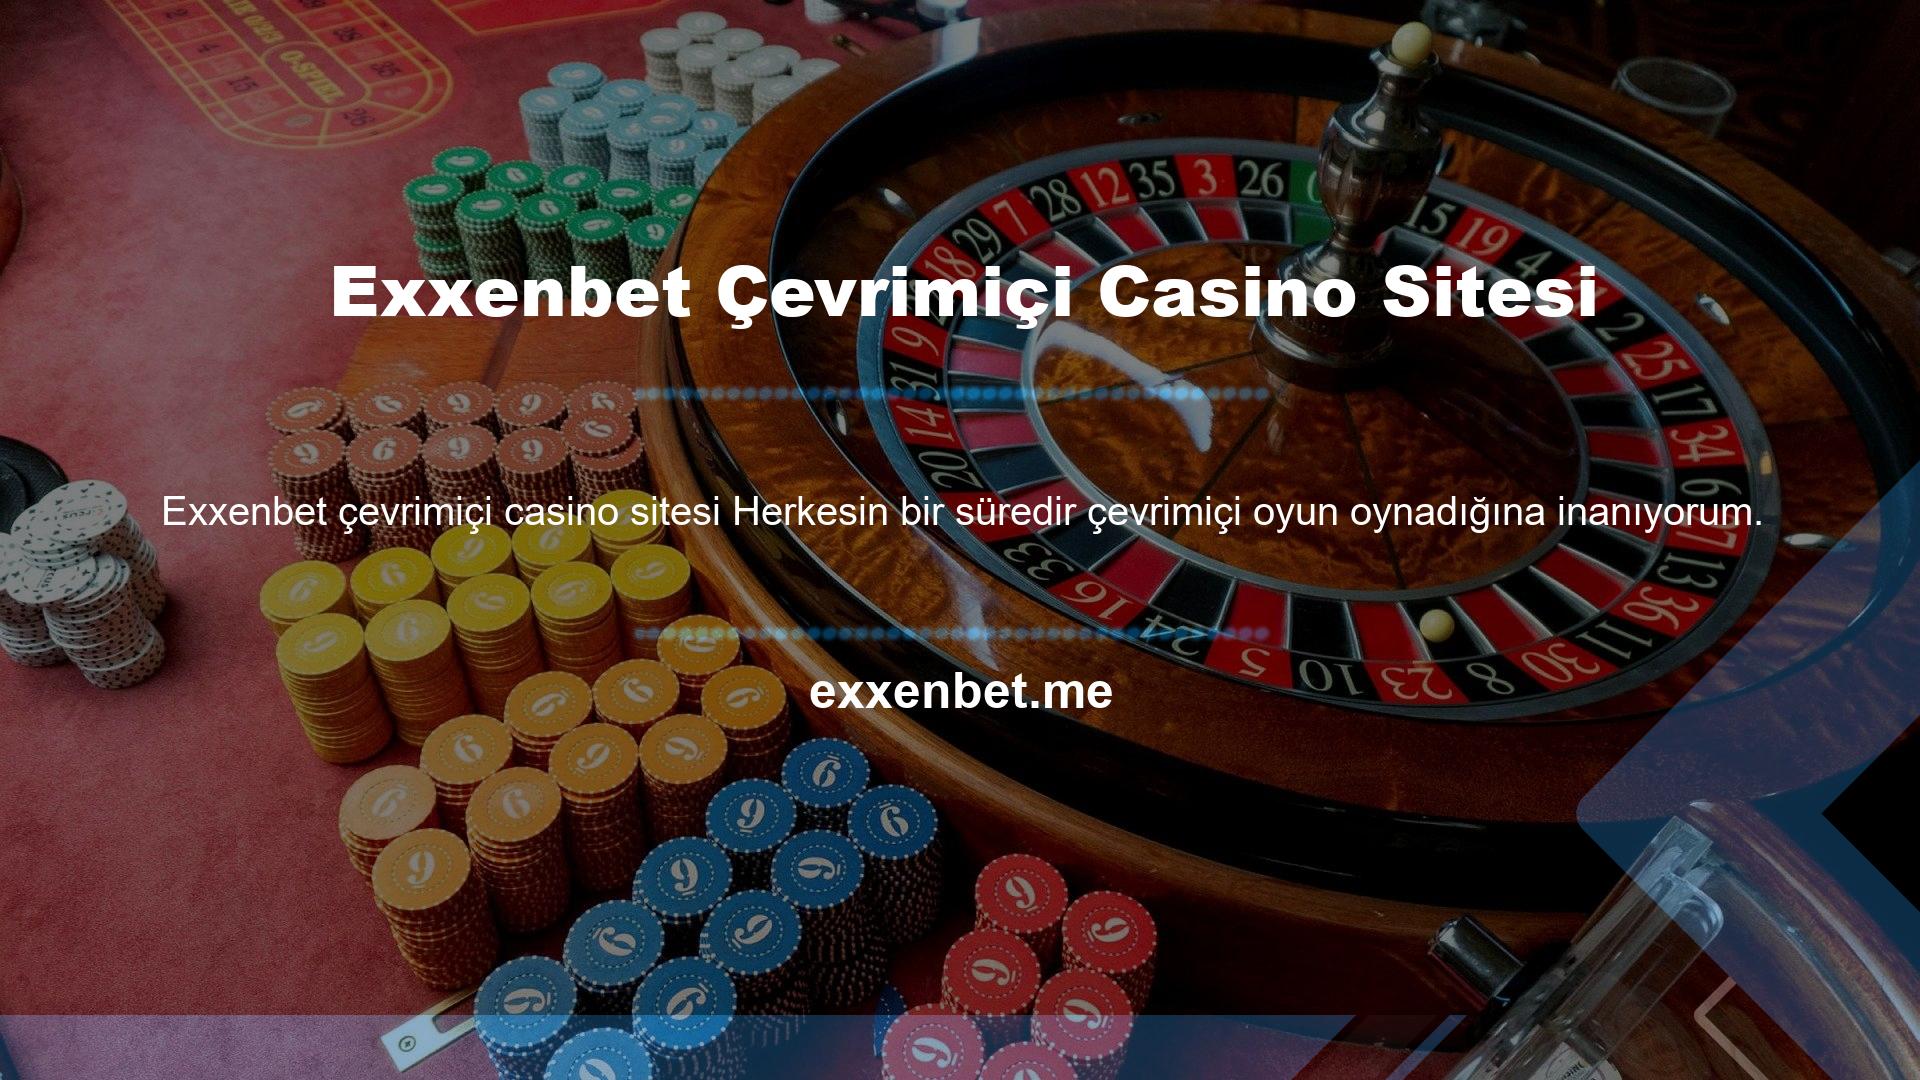 Exxenbet çevrimiçi casino sitelerinde ne tür oyunlar var ama bahse girerim şu anda bahsedeceğim site gibi başka bir site görmemişsinizdir